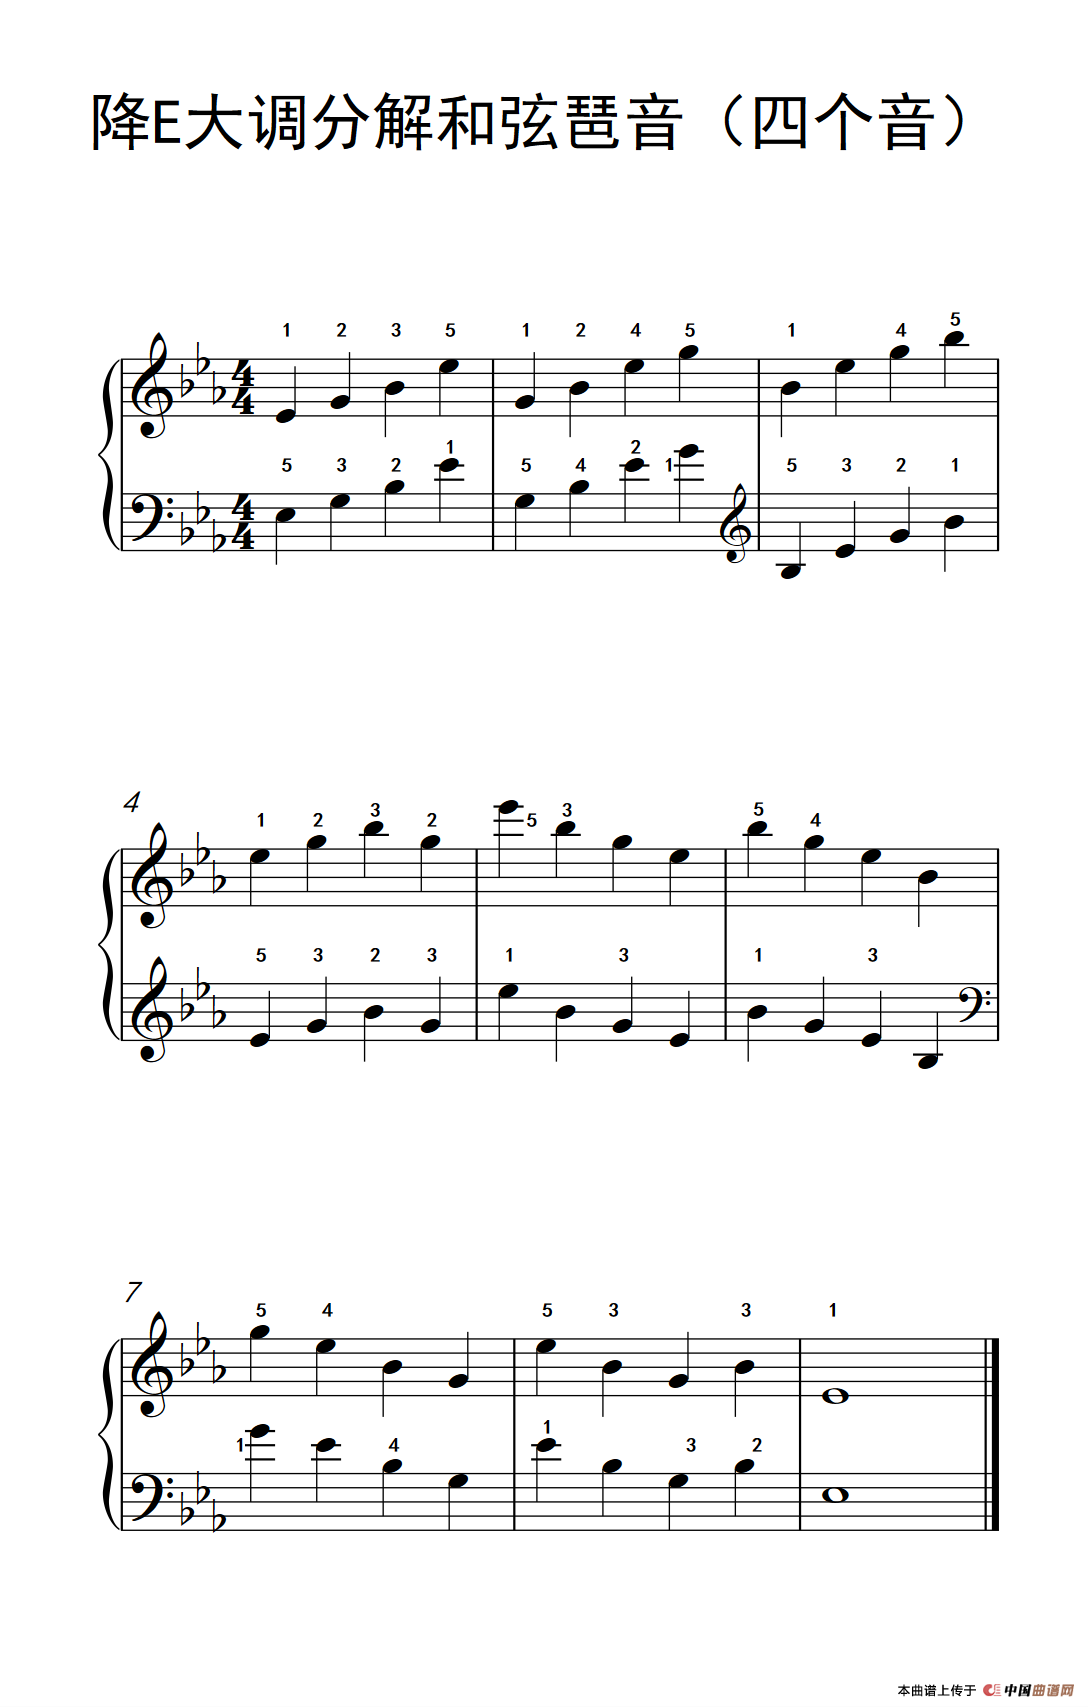 《降E大调分解和弦琶音》钢琴曲谱图分享